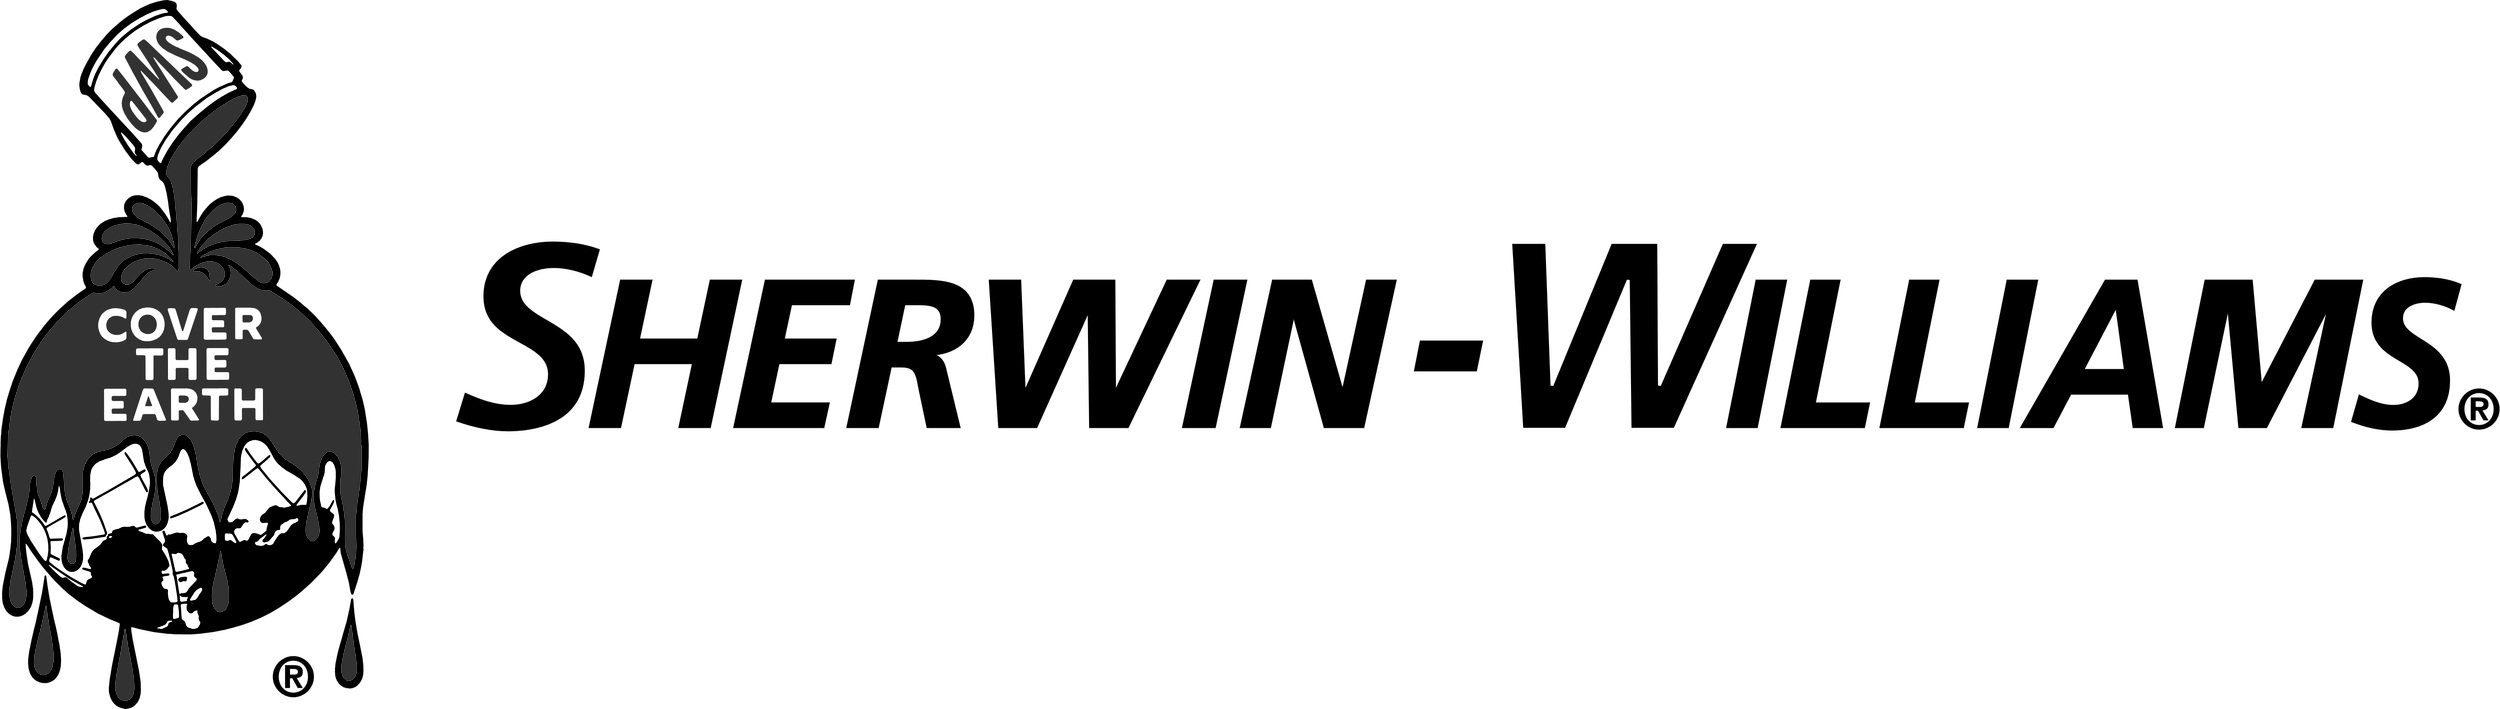 Sherwin-Williams_logo_wordmark.jpg